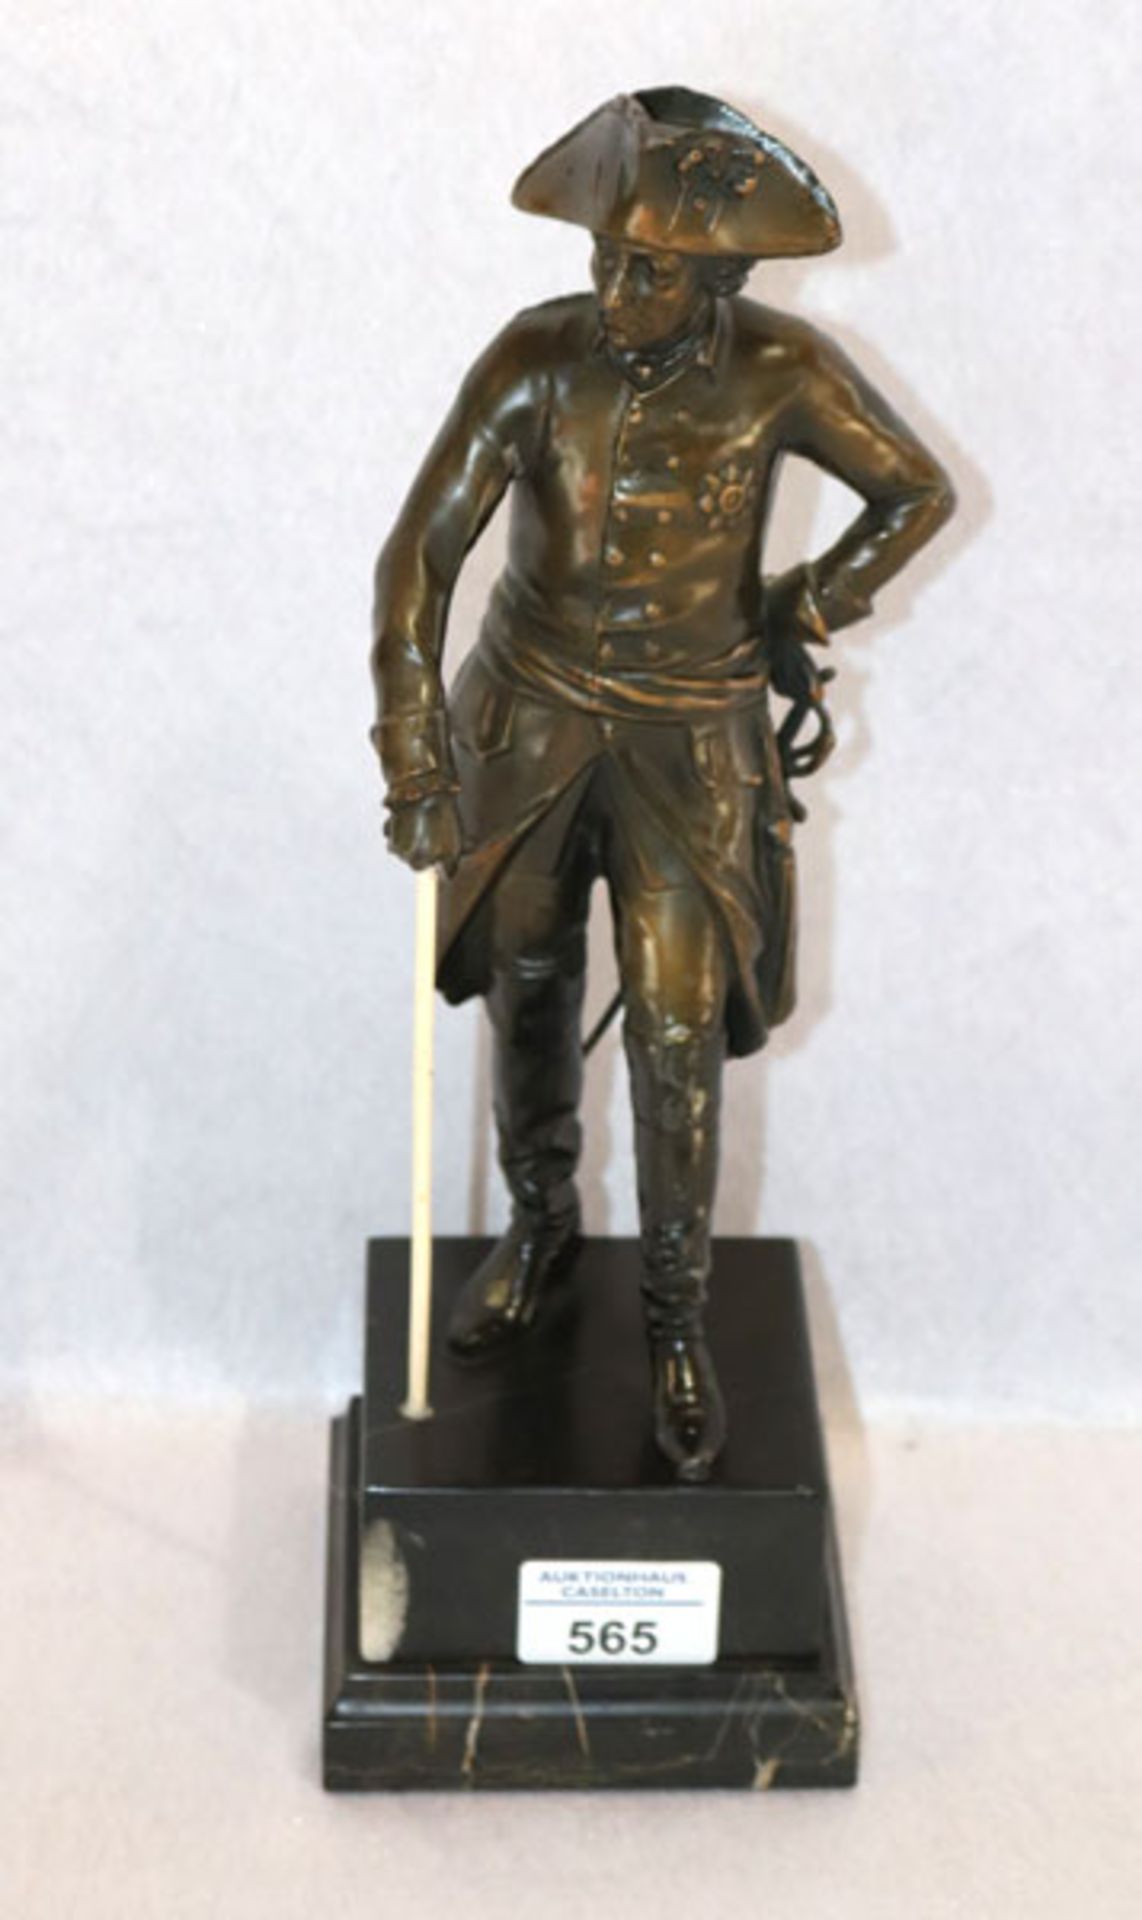 Bronze Figurenskulptur 'Friedrich der Große', Stock nicht original, auf Marmorsockel, H 33 cm